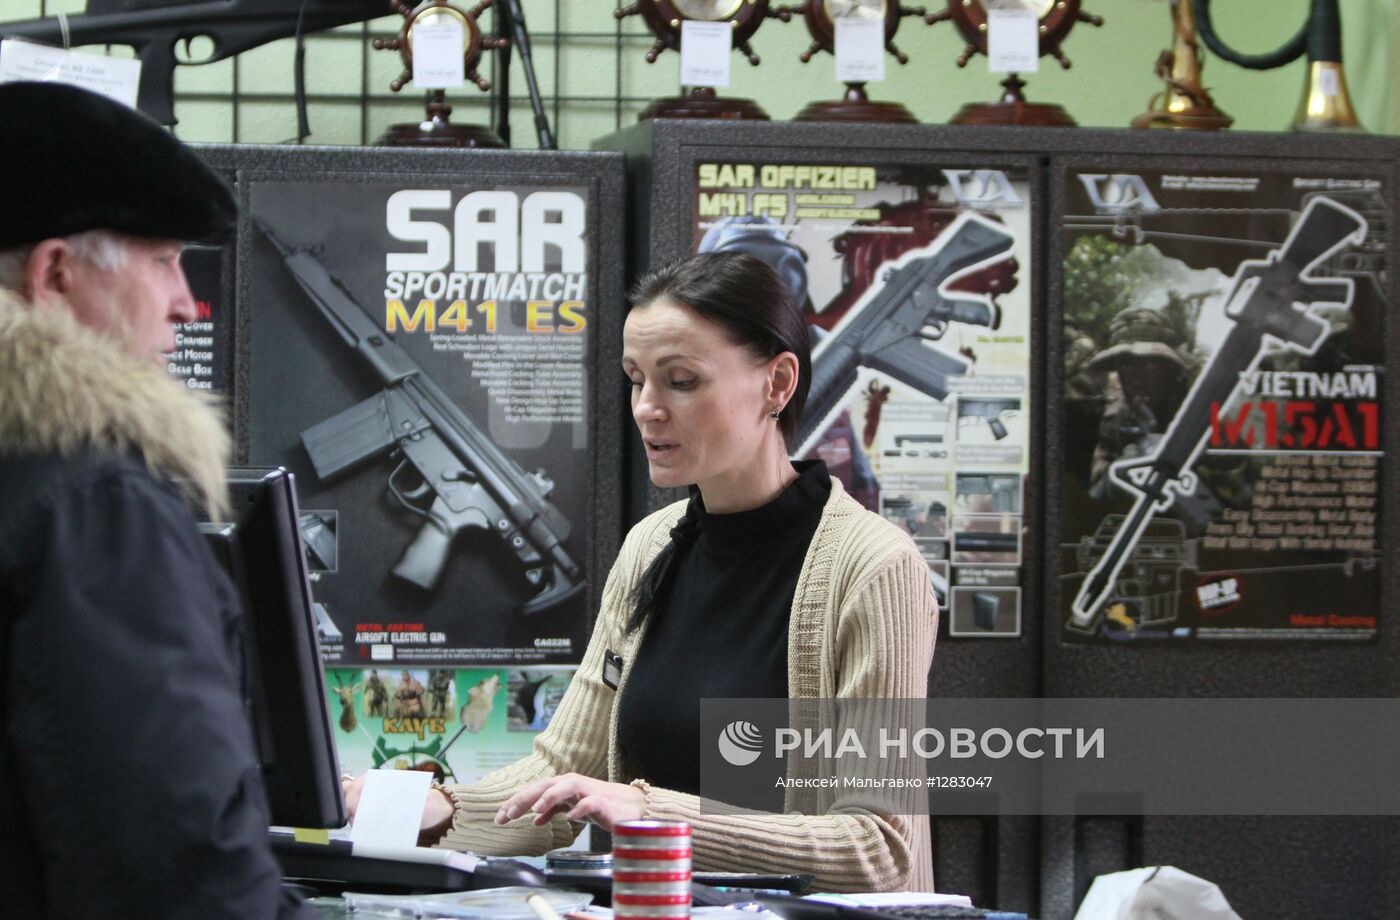 Продажа оружия в России